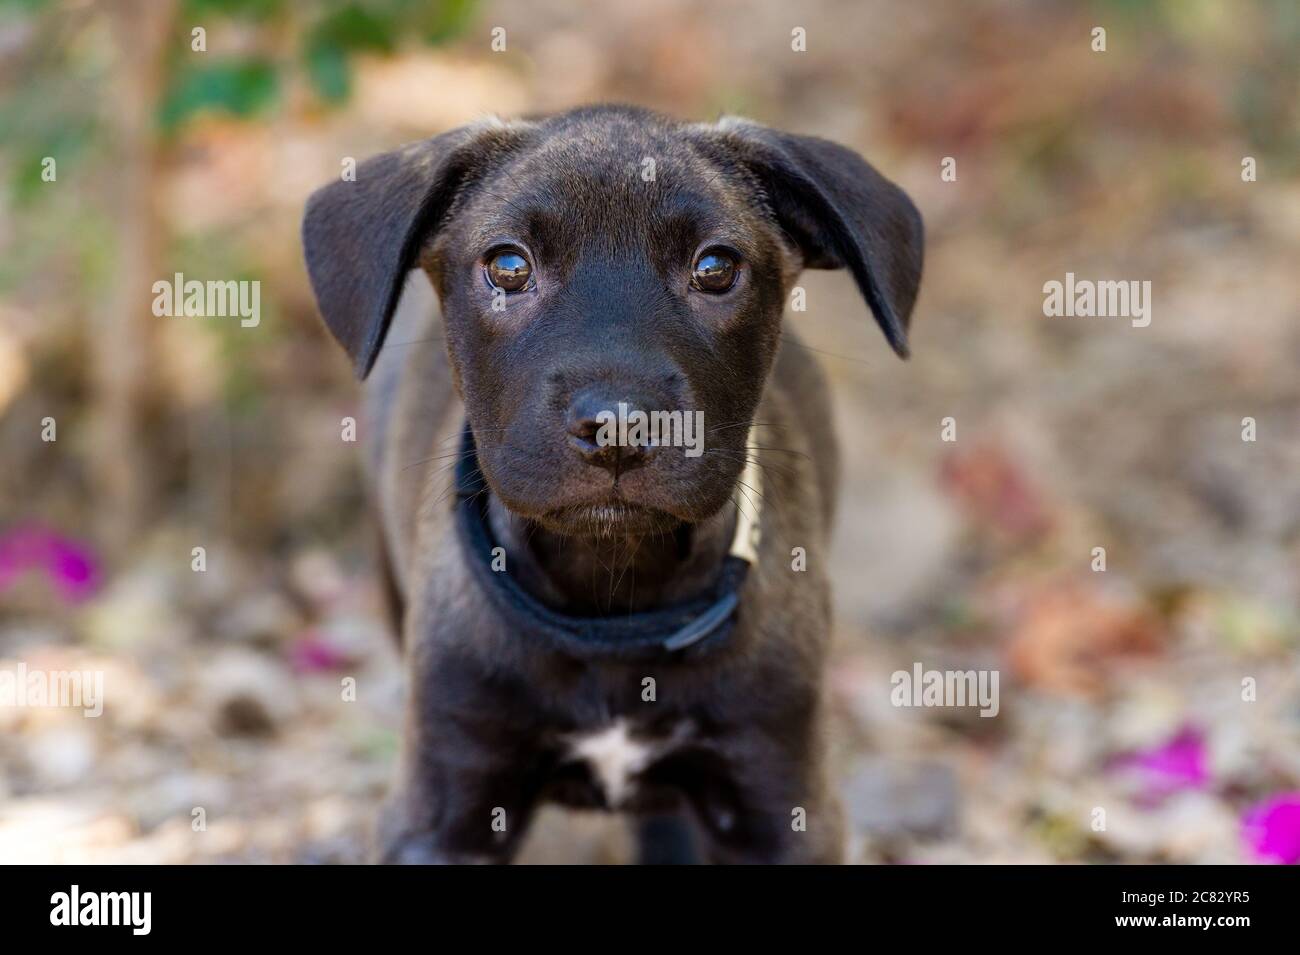 Un joli chien noir avec de grands yeux regarde directement l'appareil photo Banque D'Images